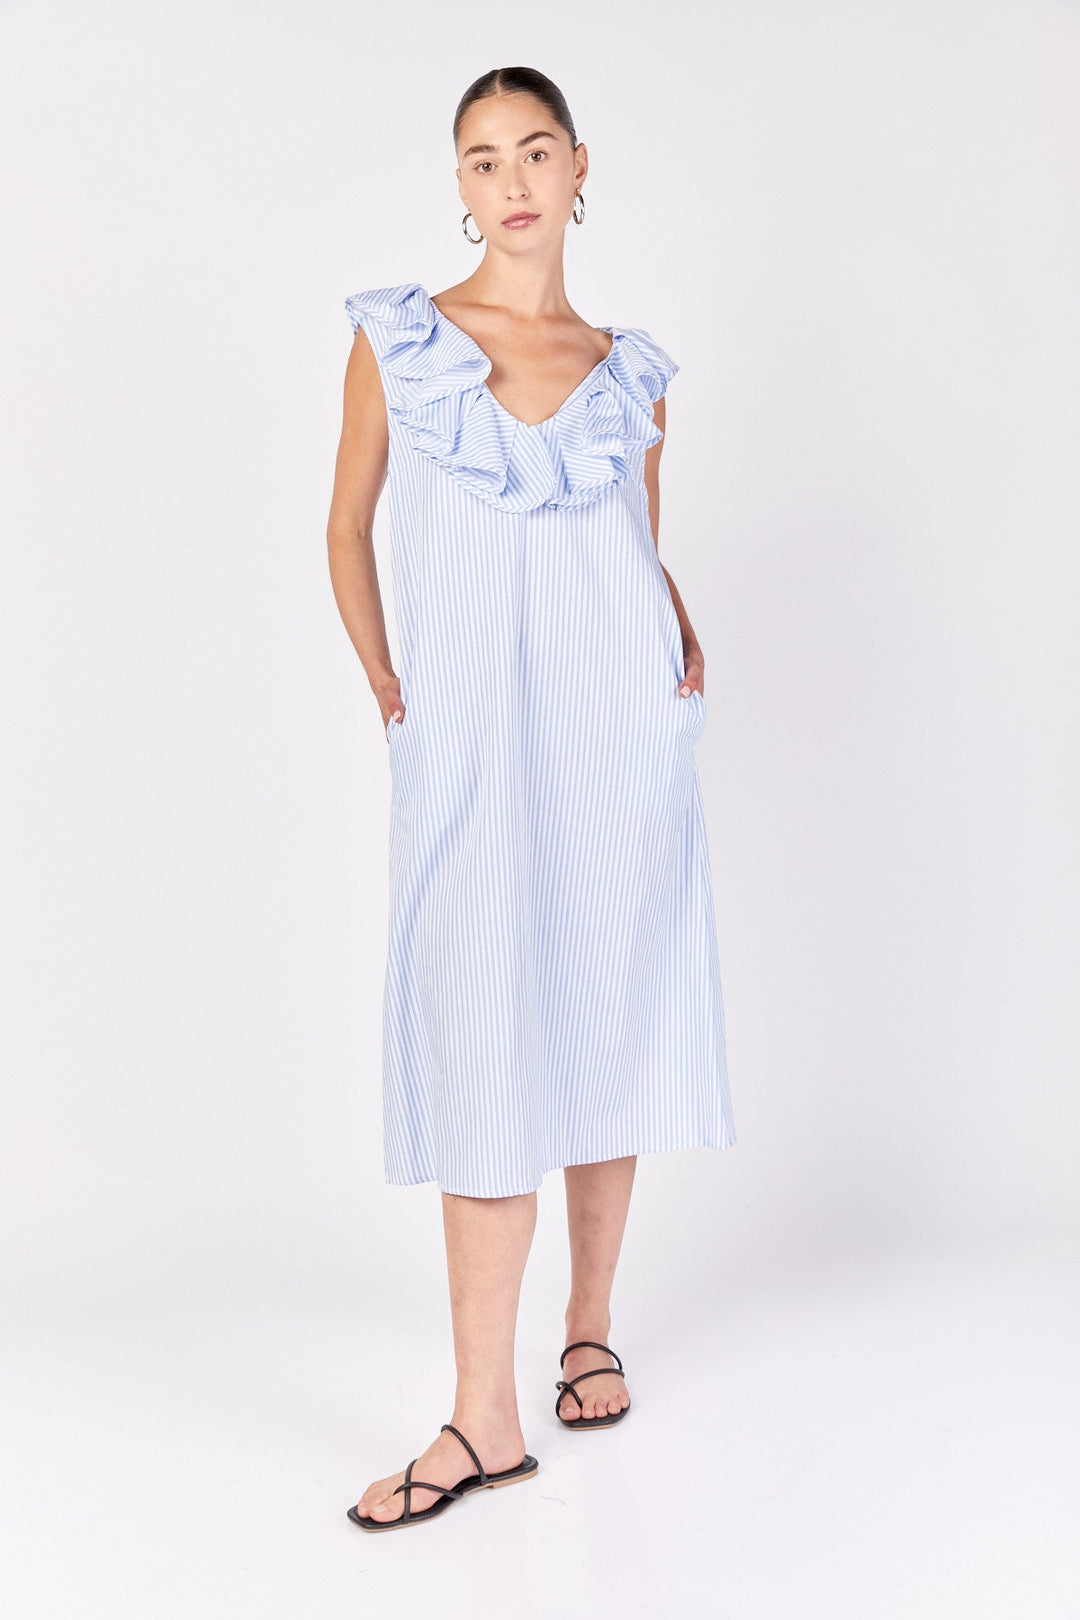 שמלת מידי רומא בפסים כחול לבן - Razili Studio